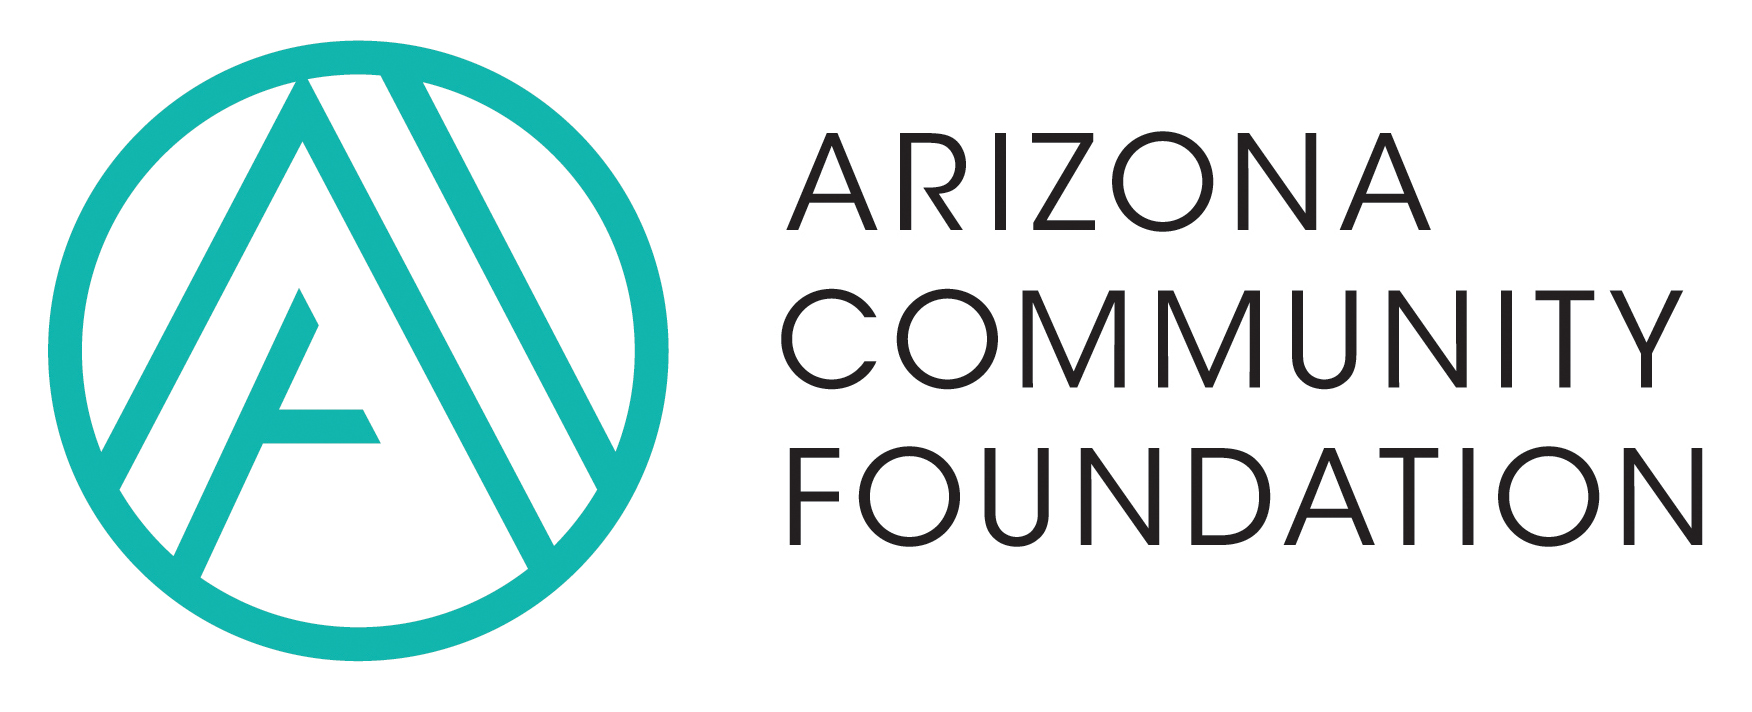 The Arizona Community Foundation